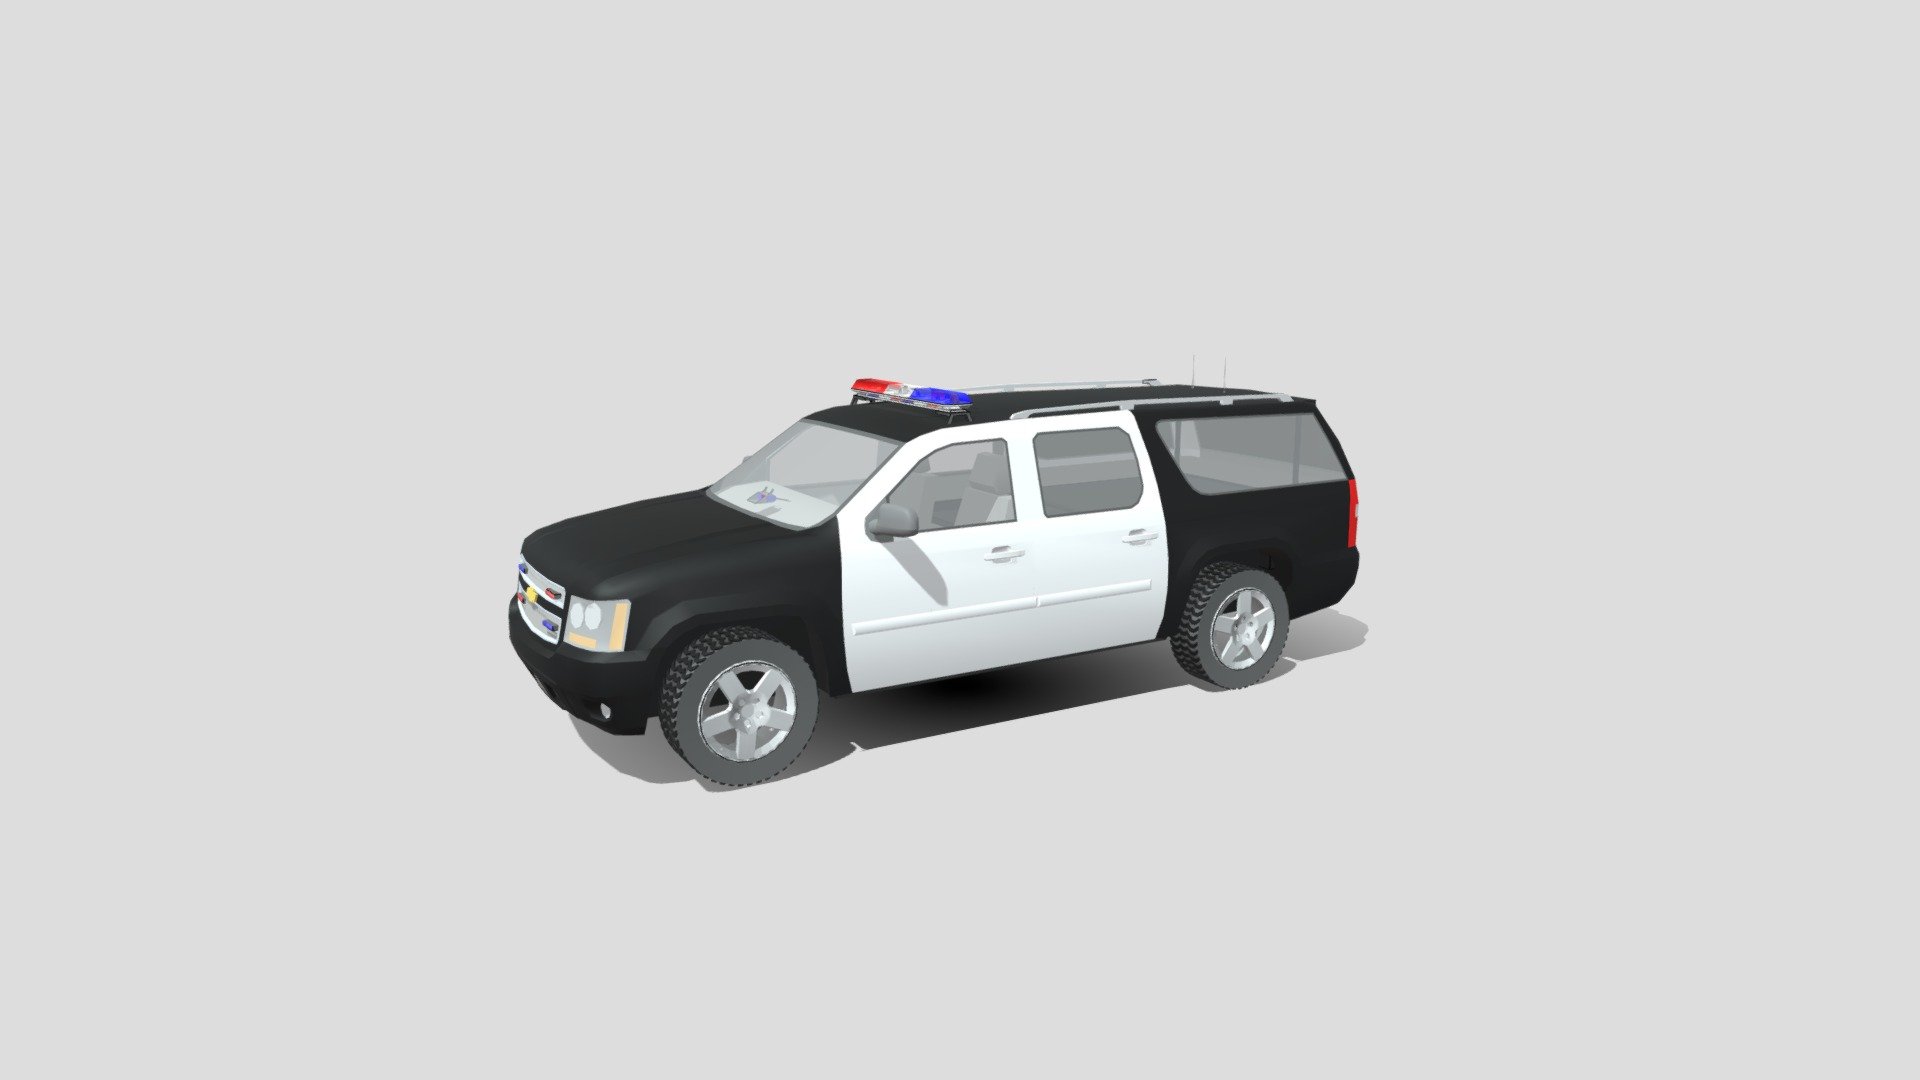 Chevy Suburban-Boyd County Sheriff Patrol